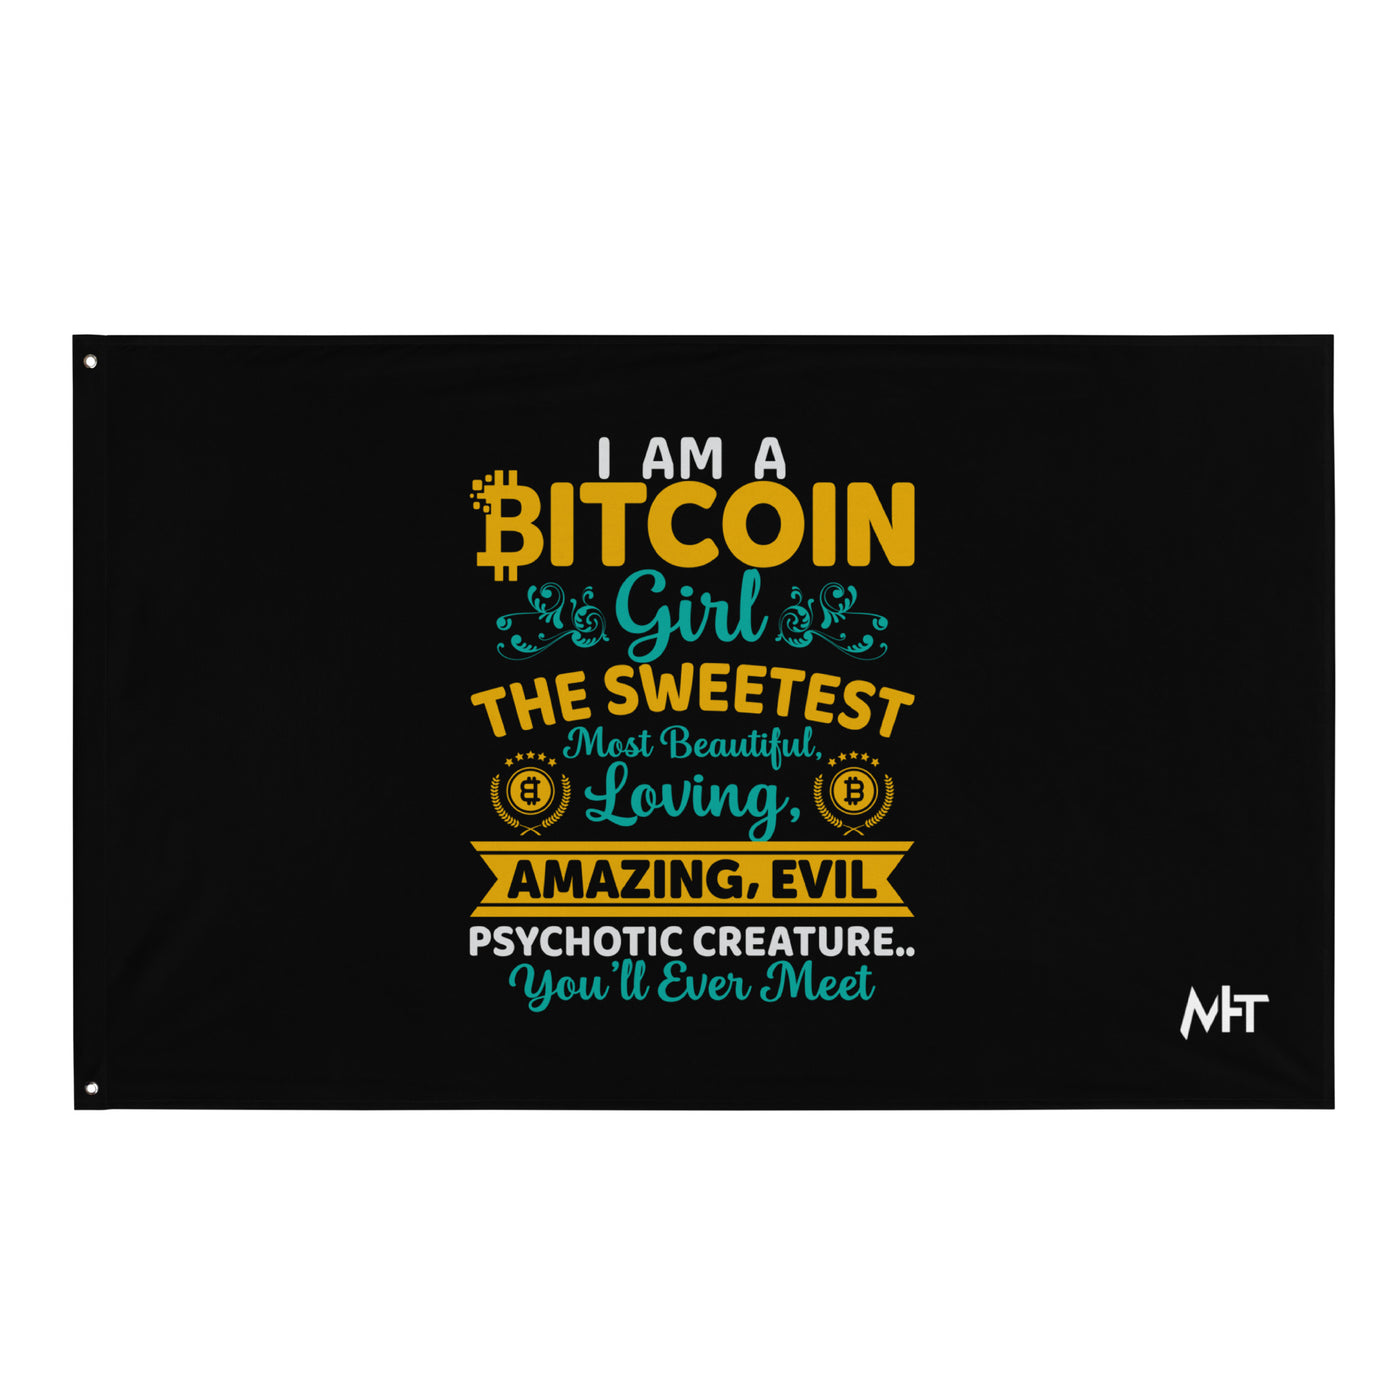 I am a Bitcoin Girl, the sweetest - Flag